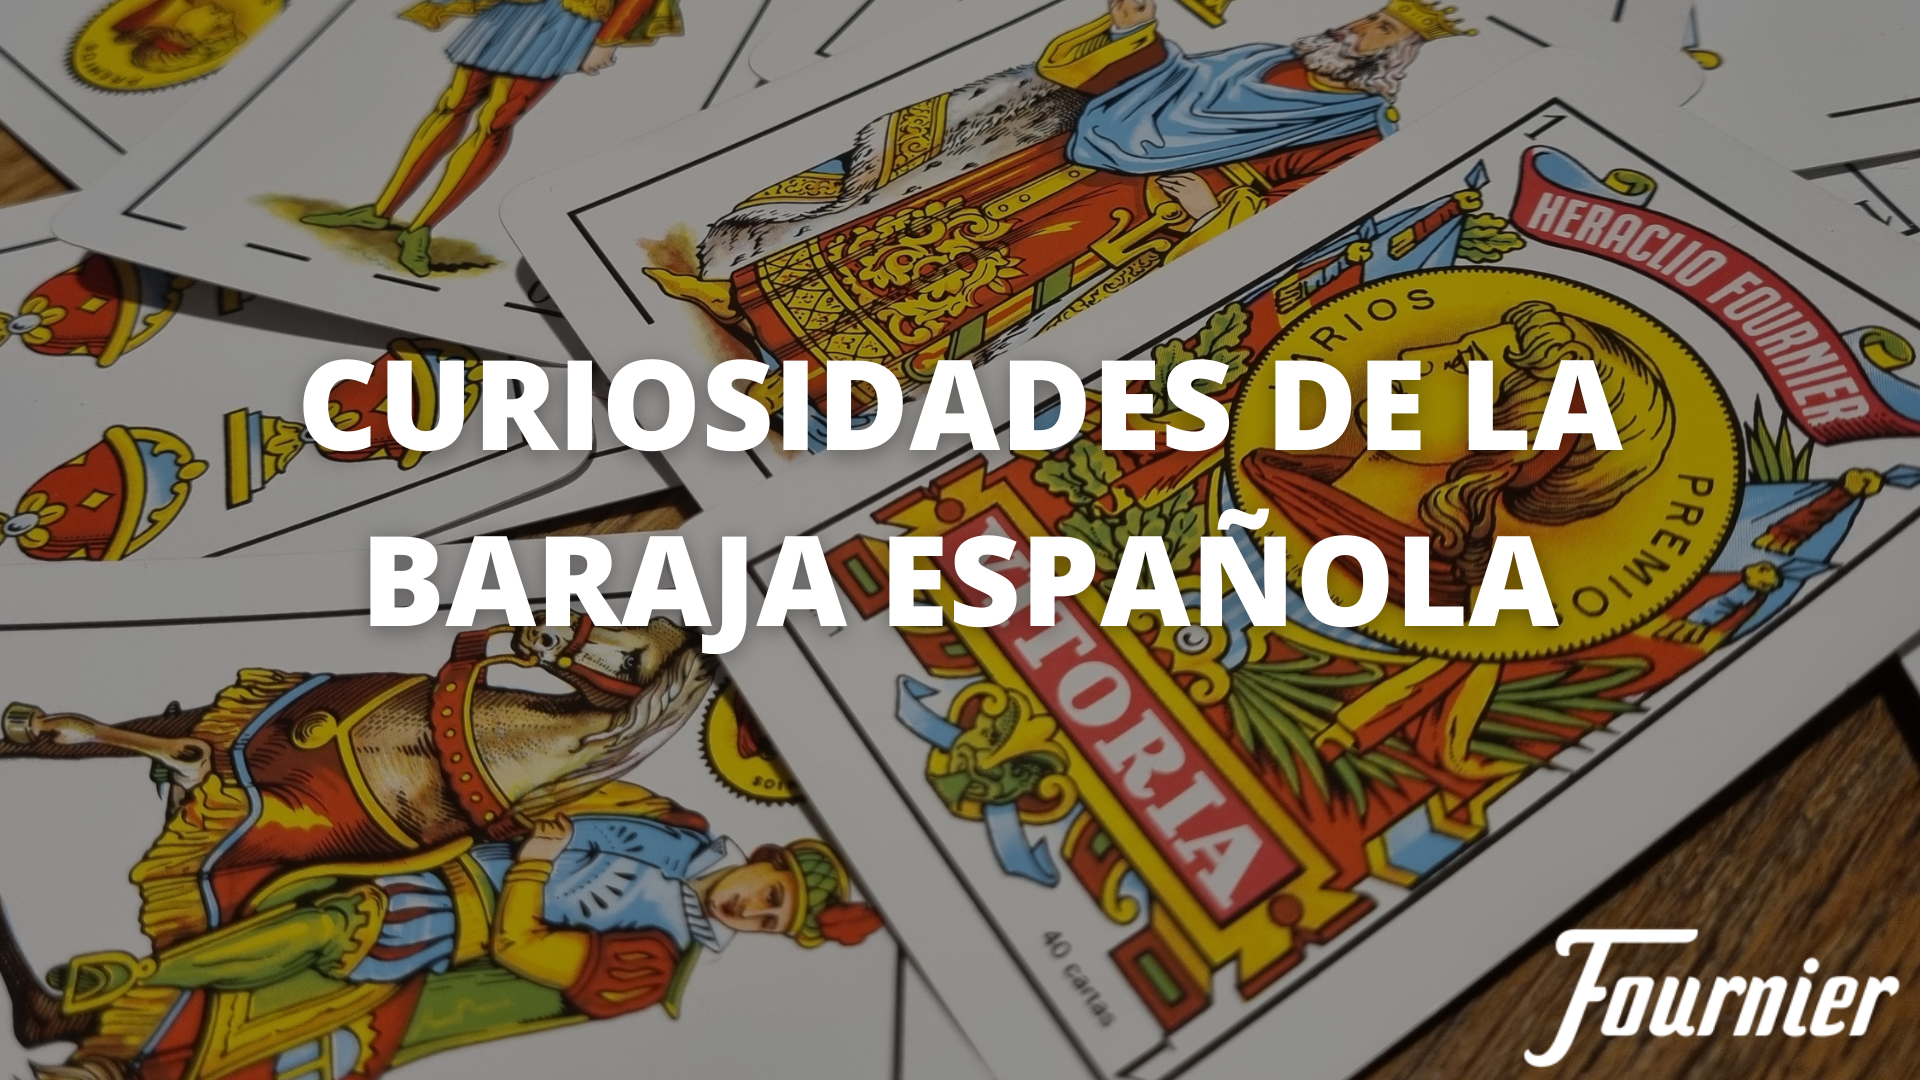 Sota de oros baraja española  Cartas españolas, Baraja española tarot,  Baraja de tarot